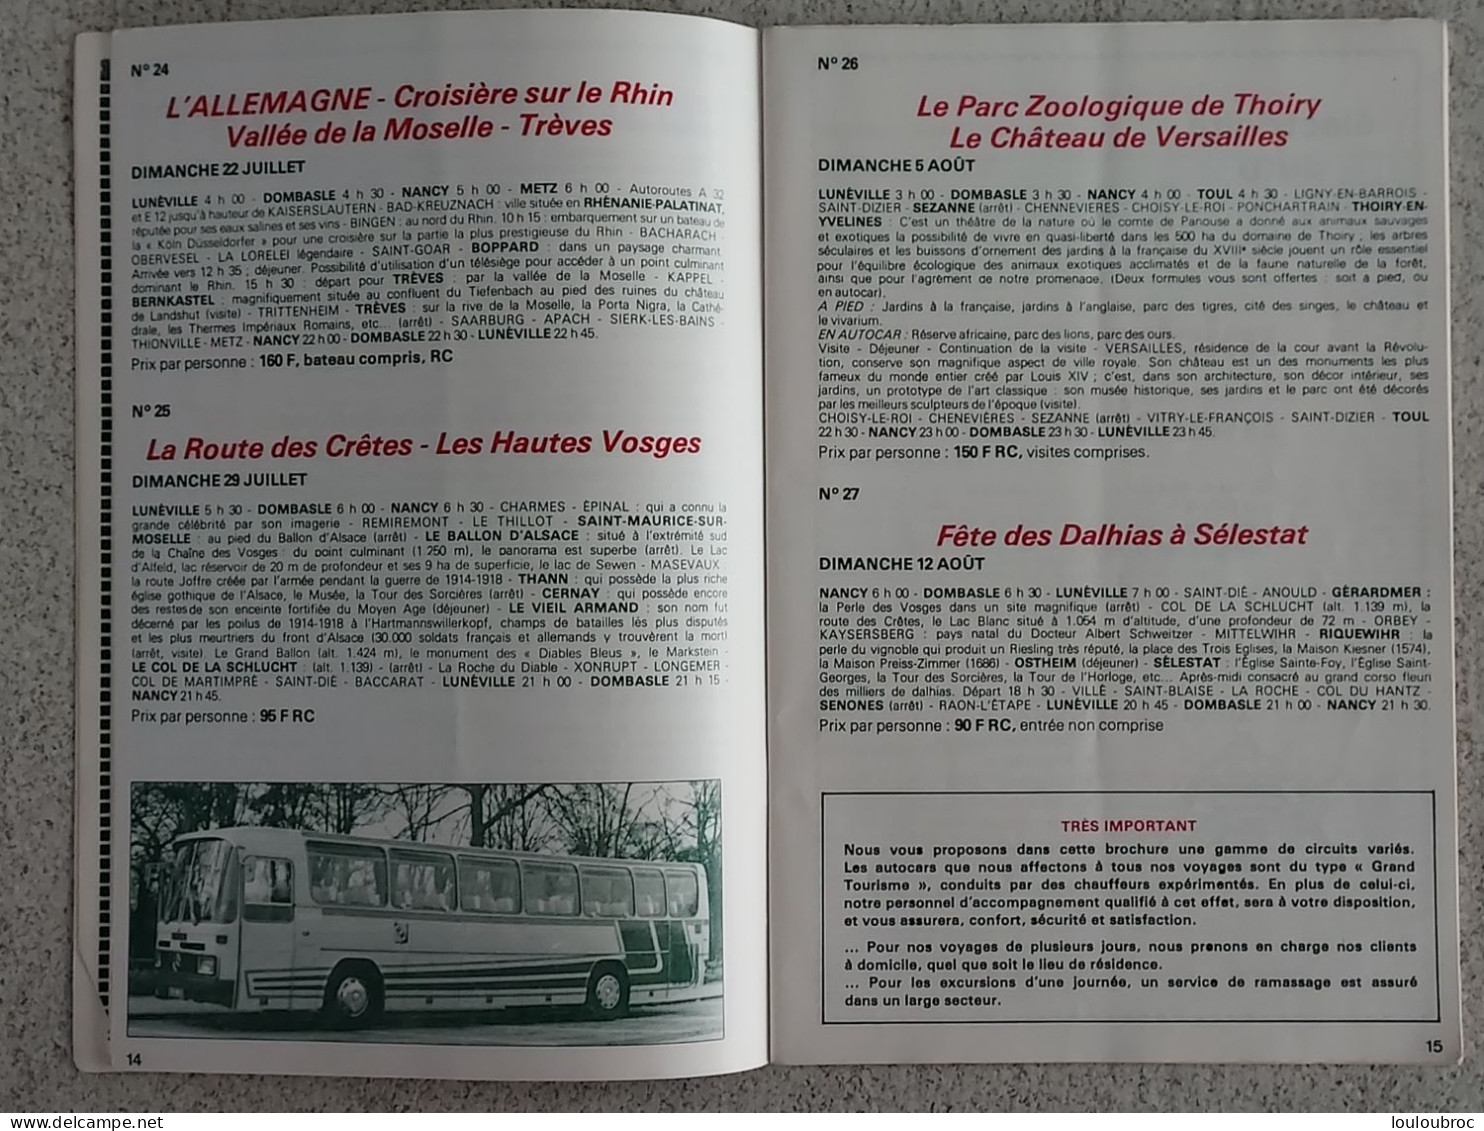 LIVRET 56 PAGES  VOYAGES ET EXCURSIONS EN AUTOCAR  1979 HELLUY TOURISME A LUNEVILLE - Dépliants Touristiques